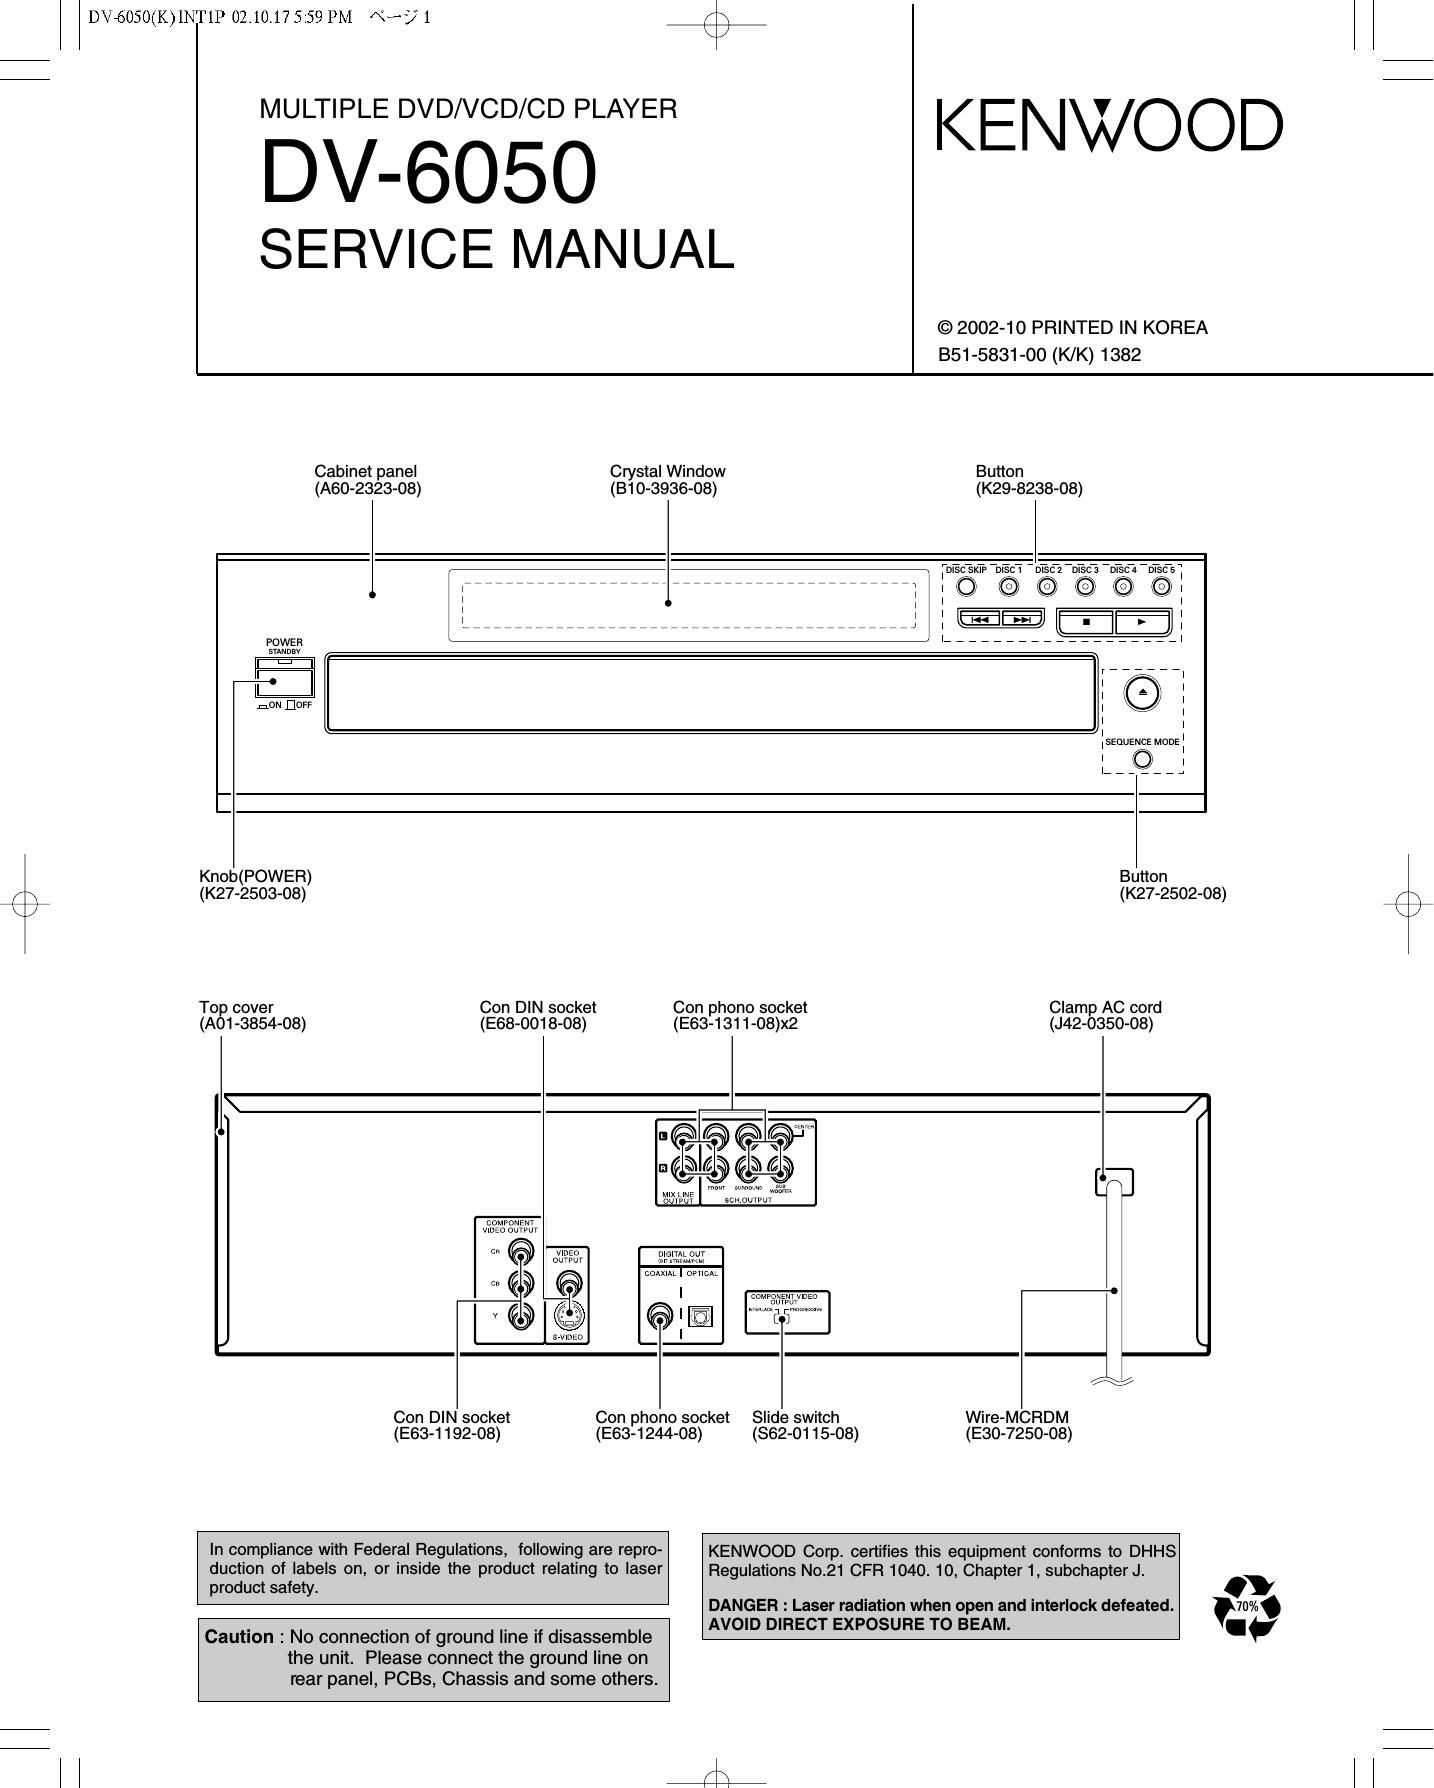 Kenwood DV 6050 Service Manual